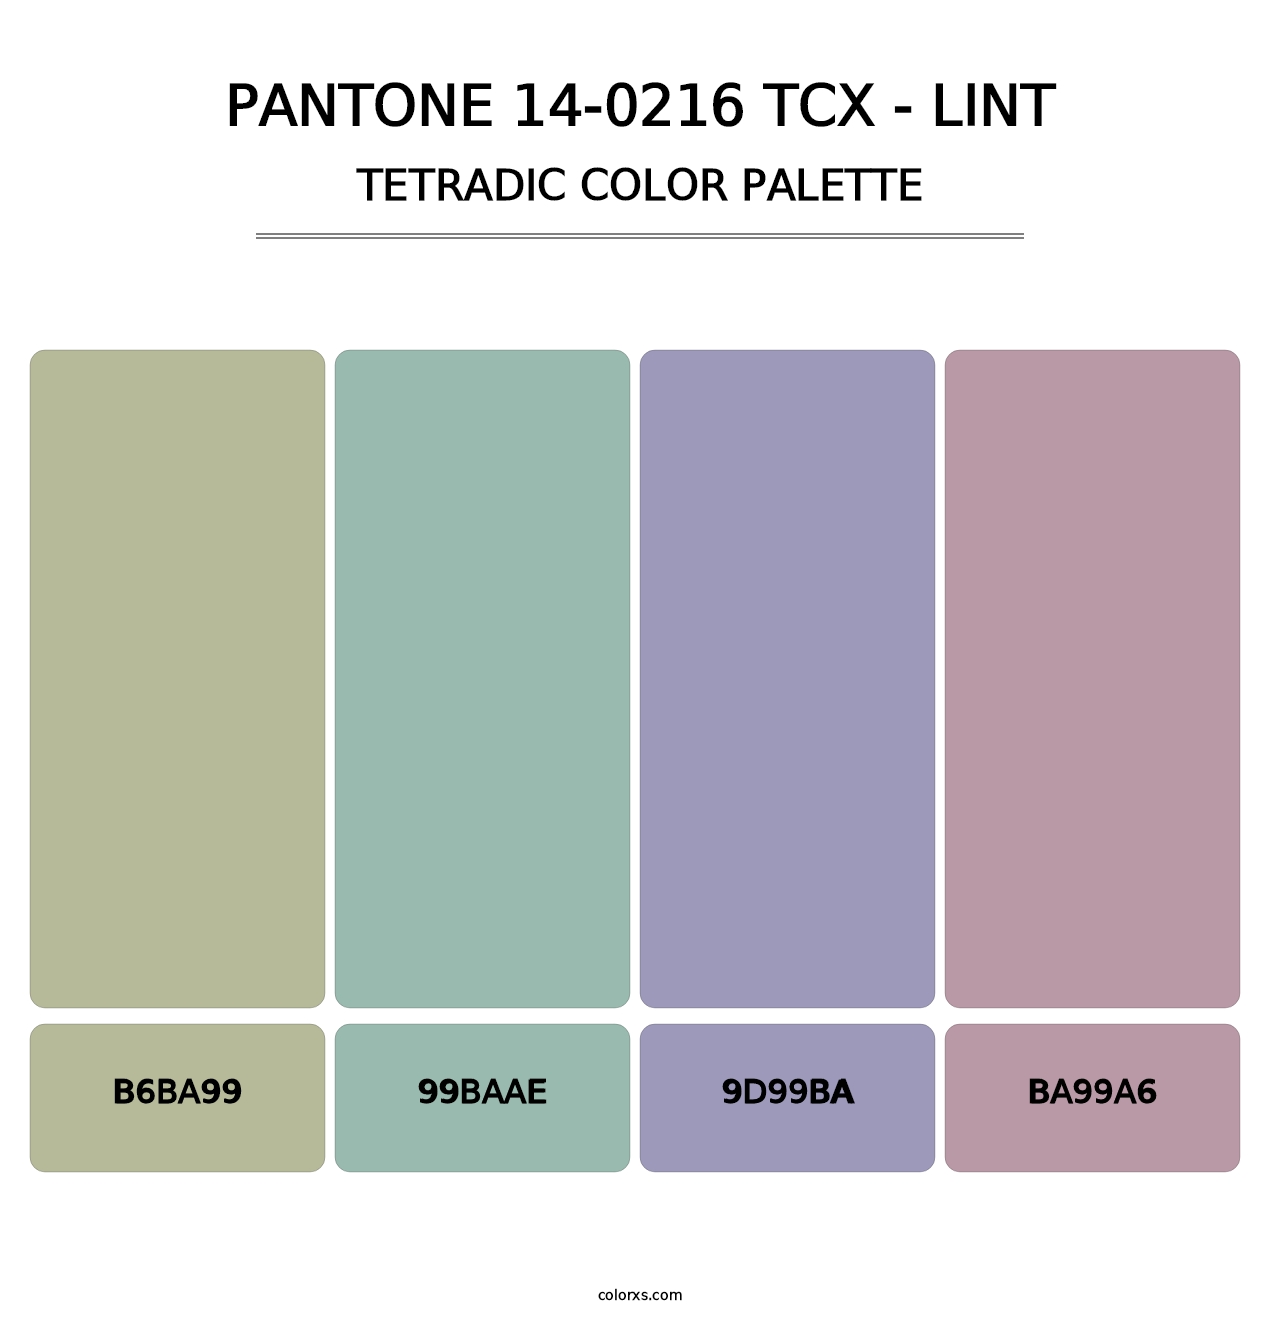 PANTONE 14-0216 TCX - Lint - Tetradic Color Palette